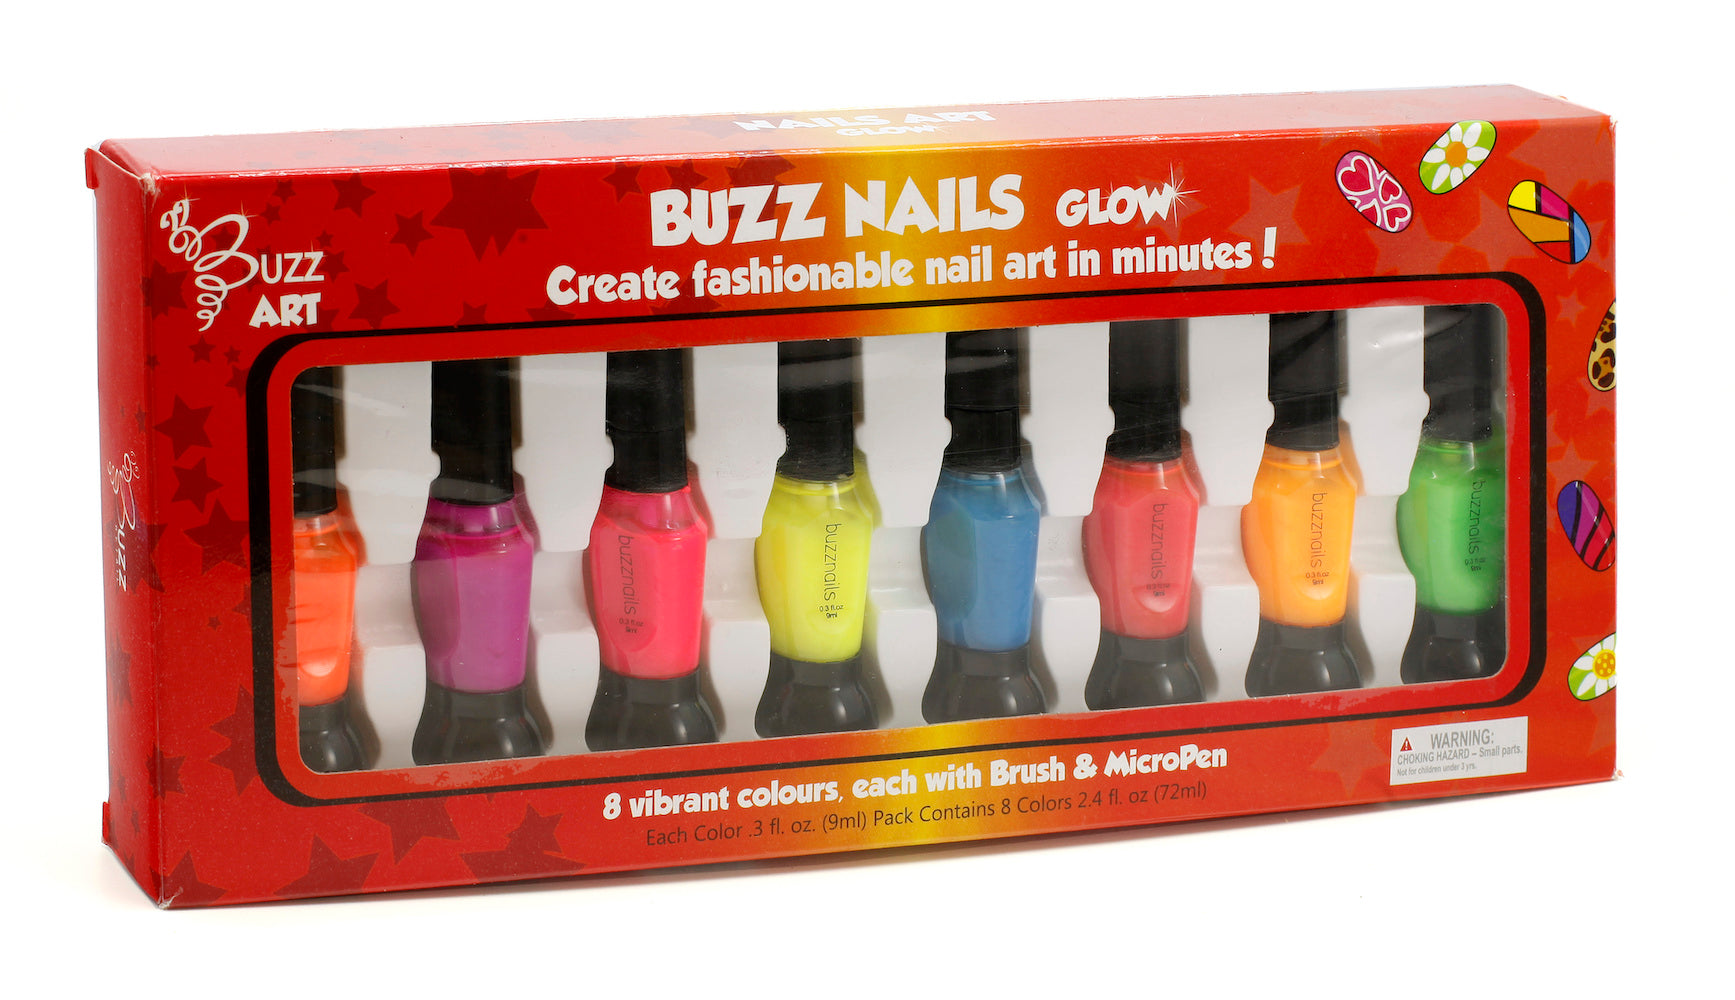 Buzz Nails - Glow